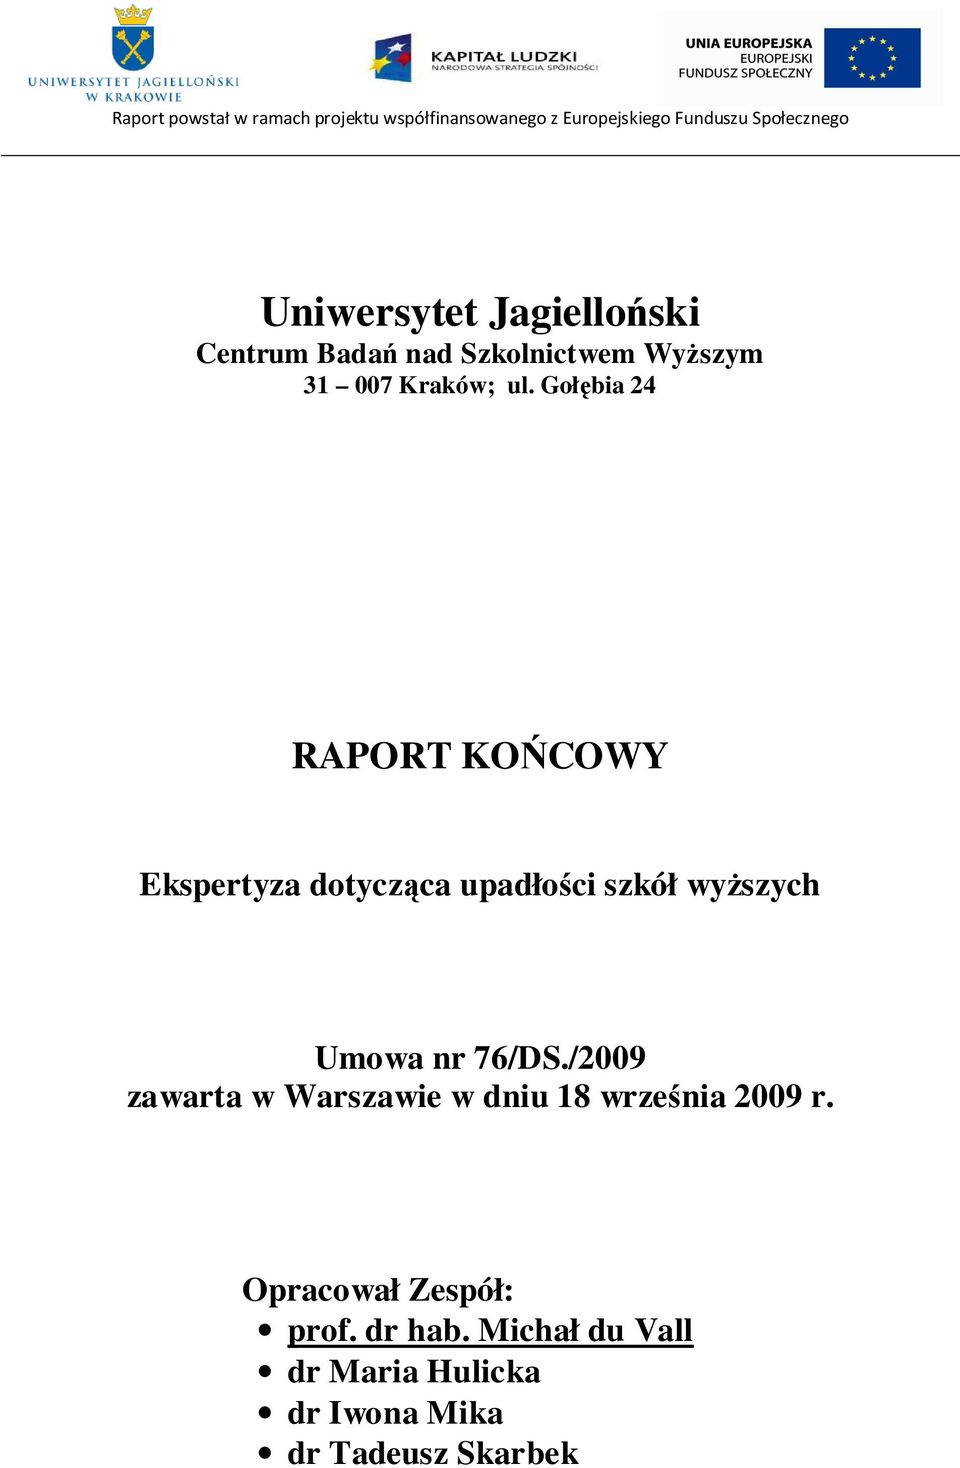 wyŝszych Umowa nr 76/DS./2009 zawarta w Warszawie w dniu 18 września 2009 r.